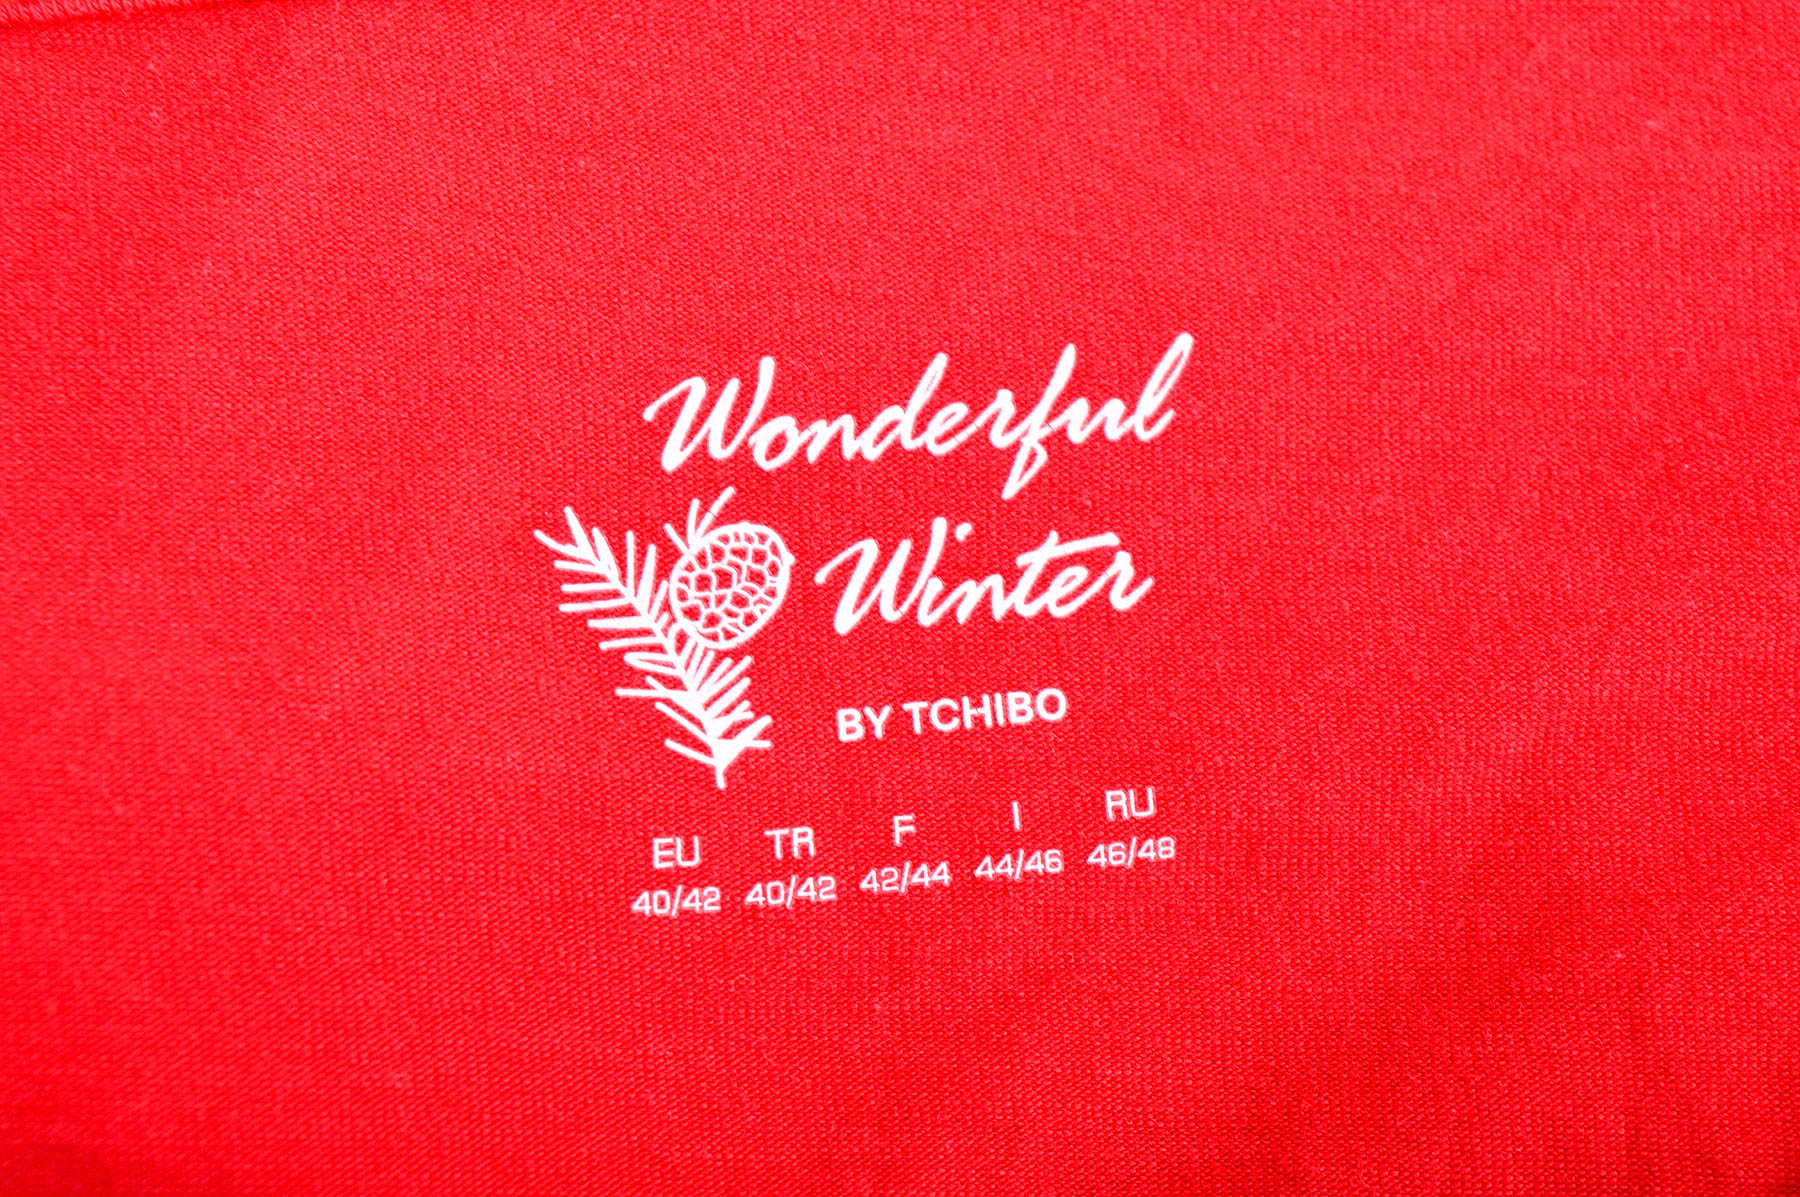 Γυναικεία μπλούζα - Wonderful winter by Tchibo - 2